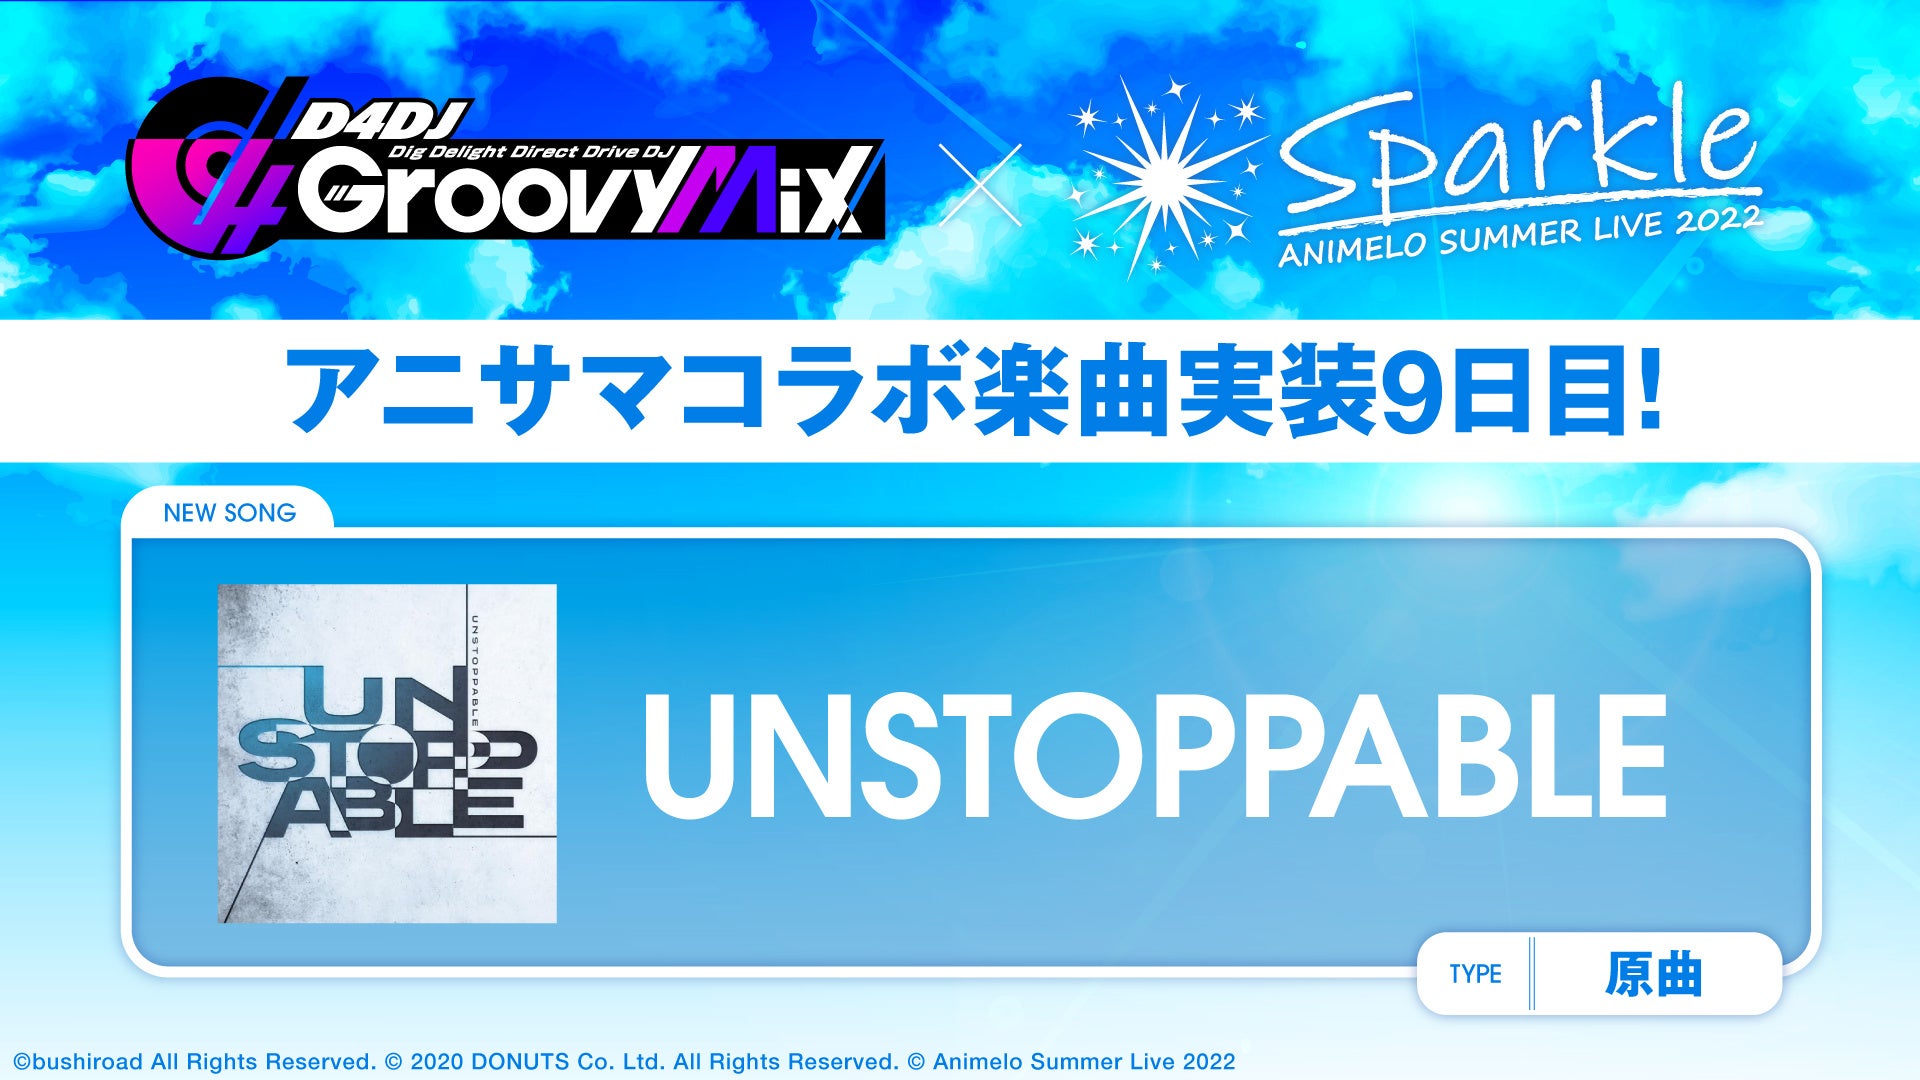 スマートフォン向けリズムゲーム「D4DJ Groovy Mix」にアニサマコラボ楽曲「UNSTOPPABLE」原曲を追加！